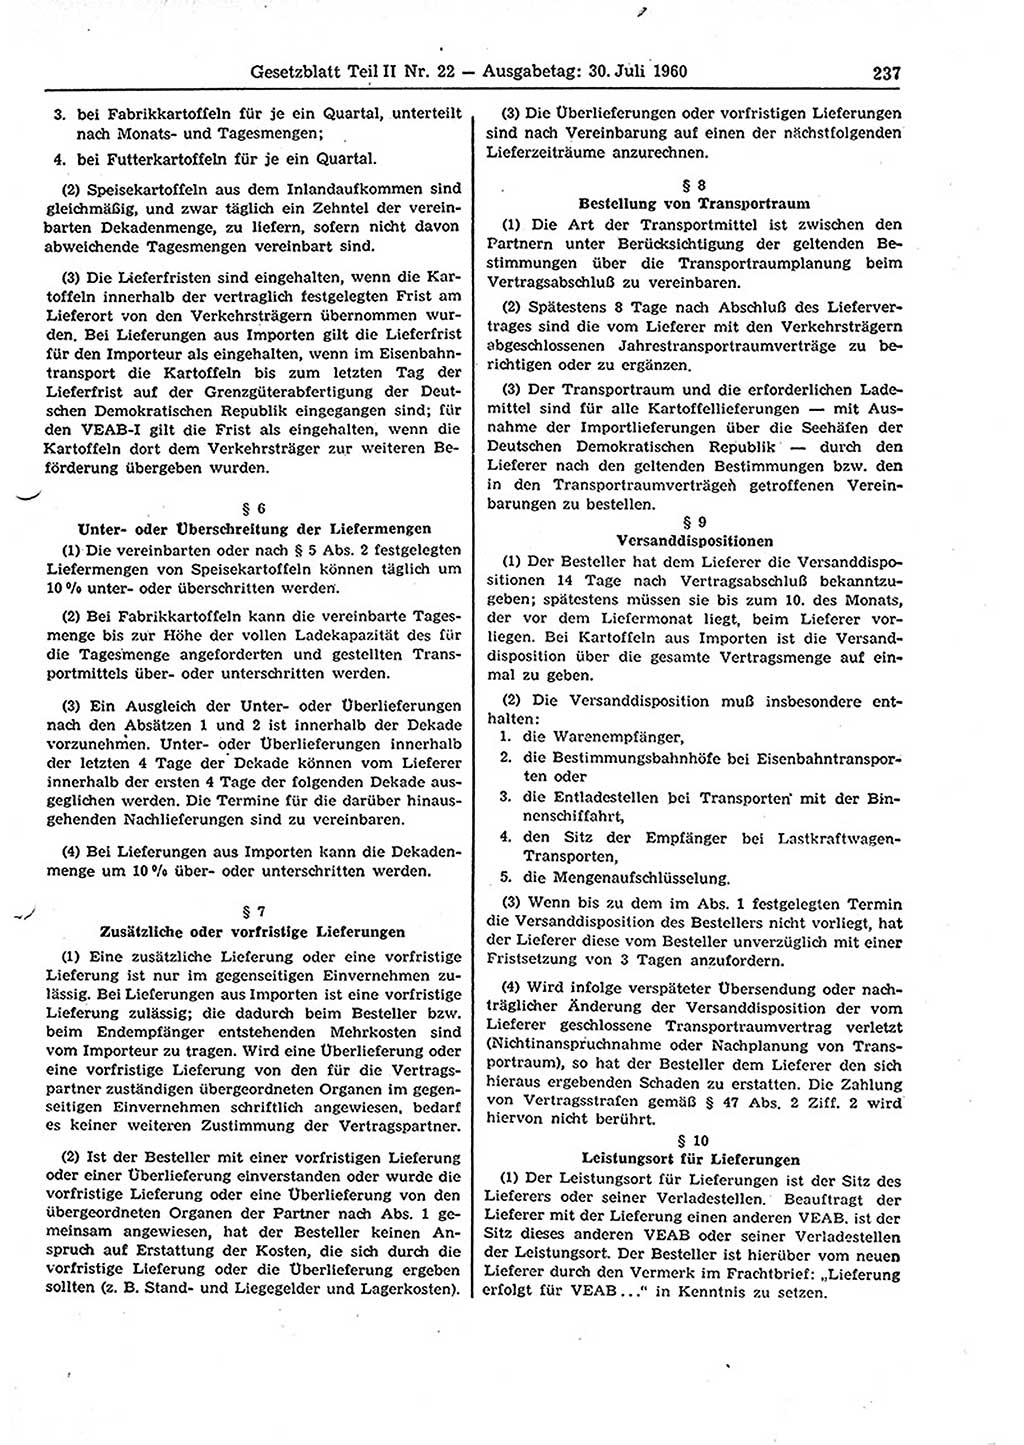 Gesetzblatt (GBl.) der Deutschen Demokratischen Republik (DDR) Teil ⅠⅠ 1960, Seite 237 (GBl. DDR ⅠⅠ 1960, S. 237)